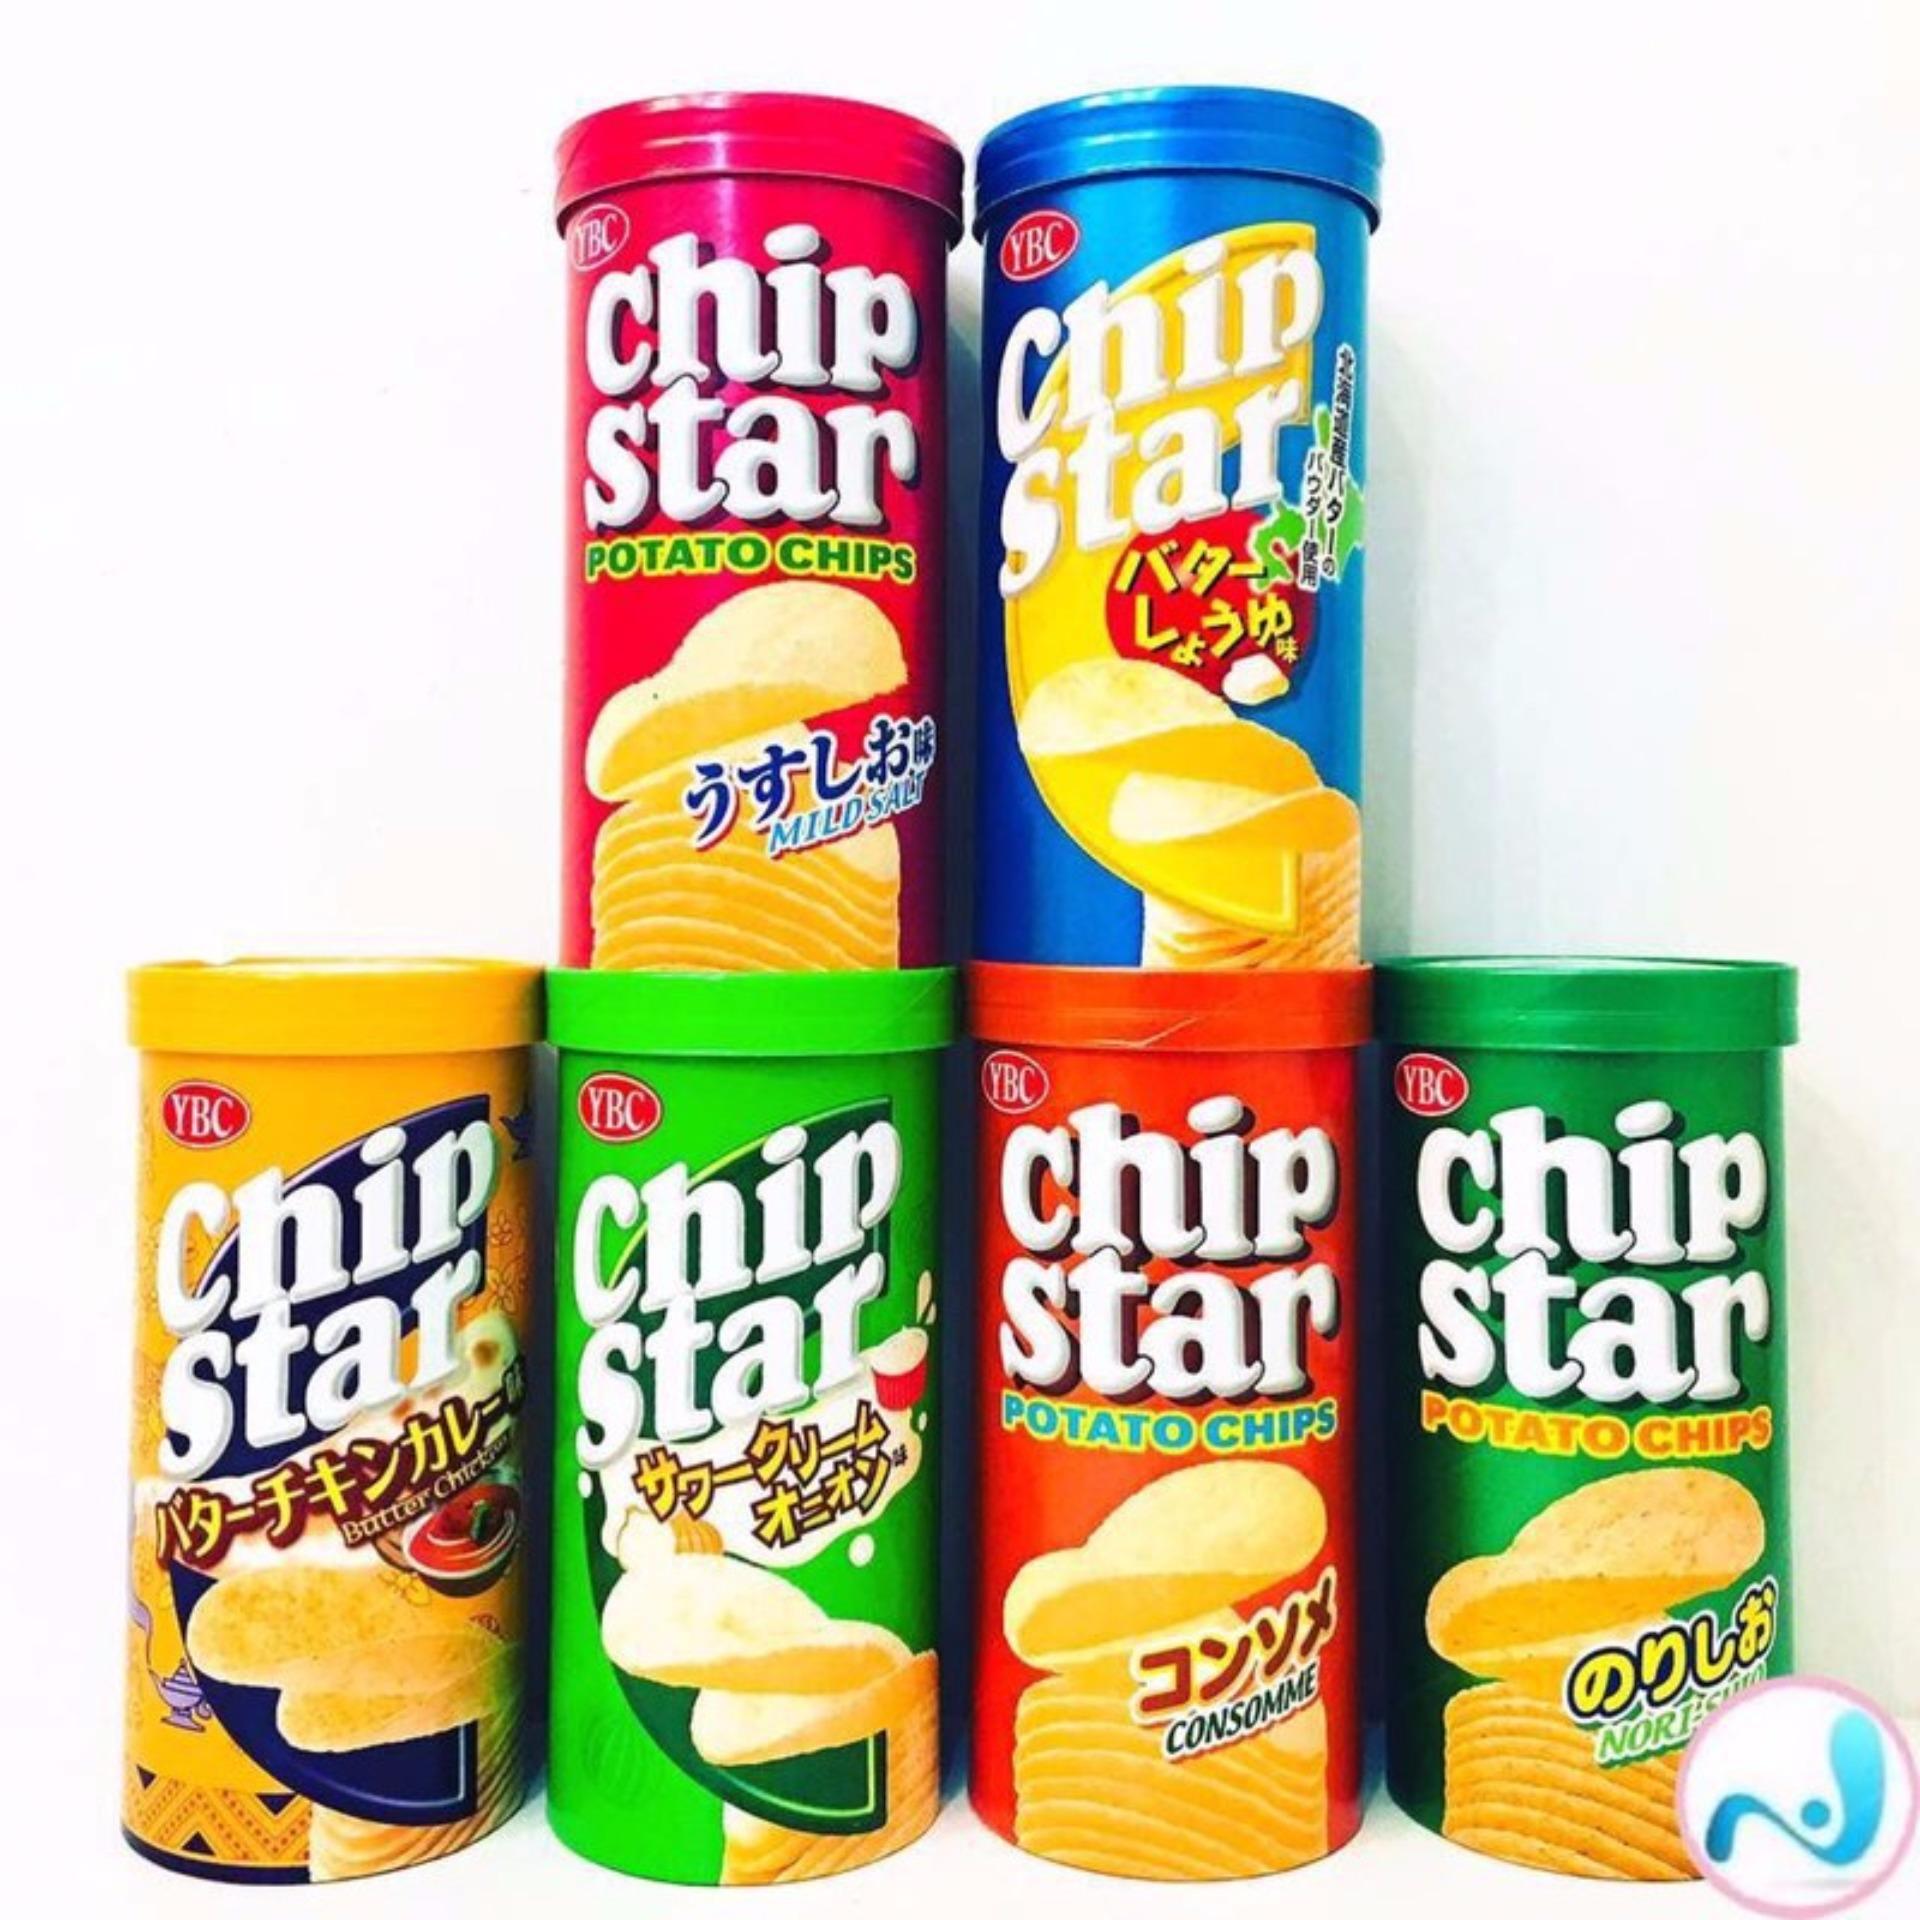 bánh snack chip star BNCS05